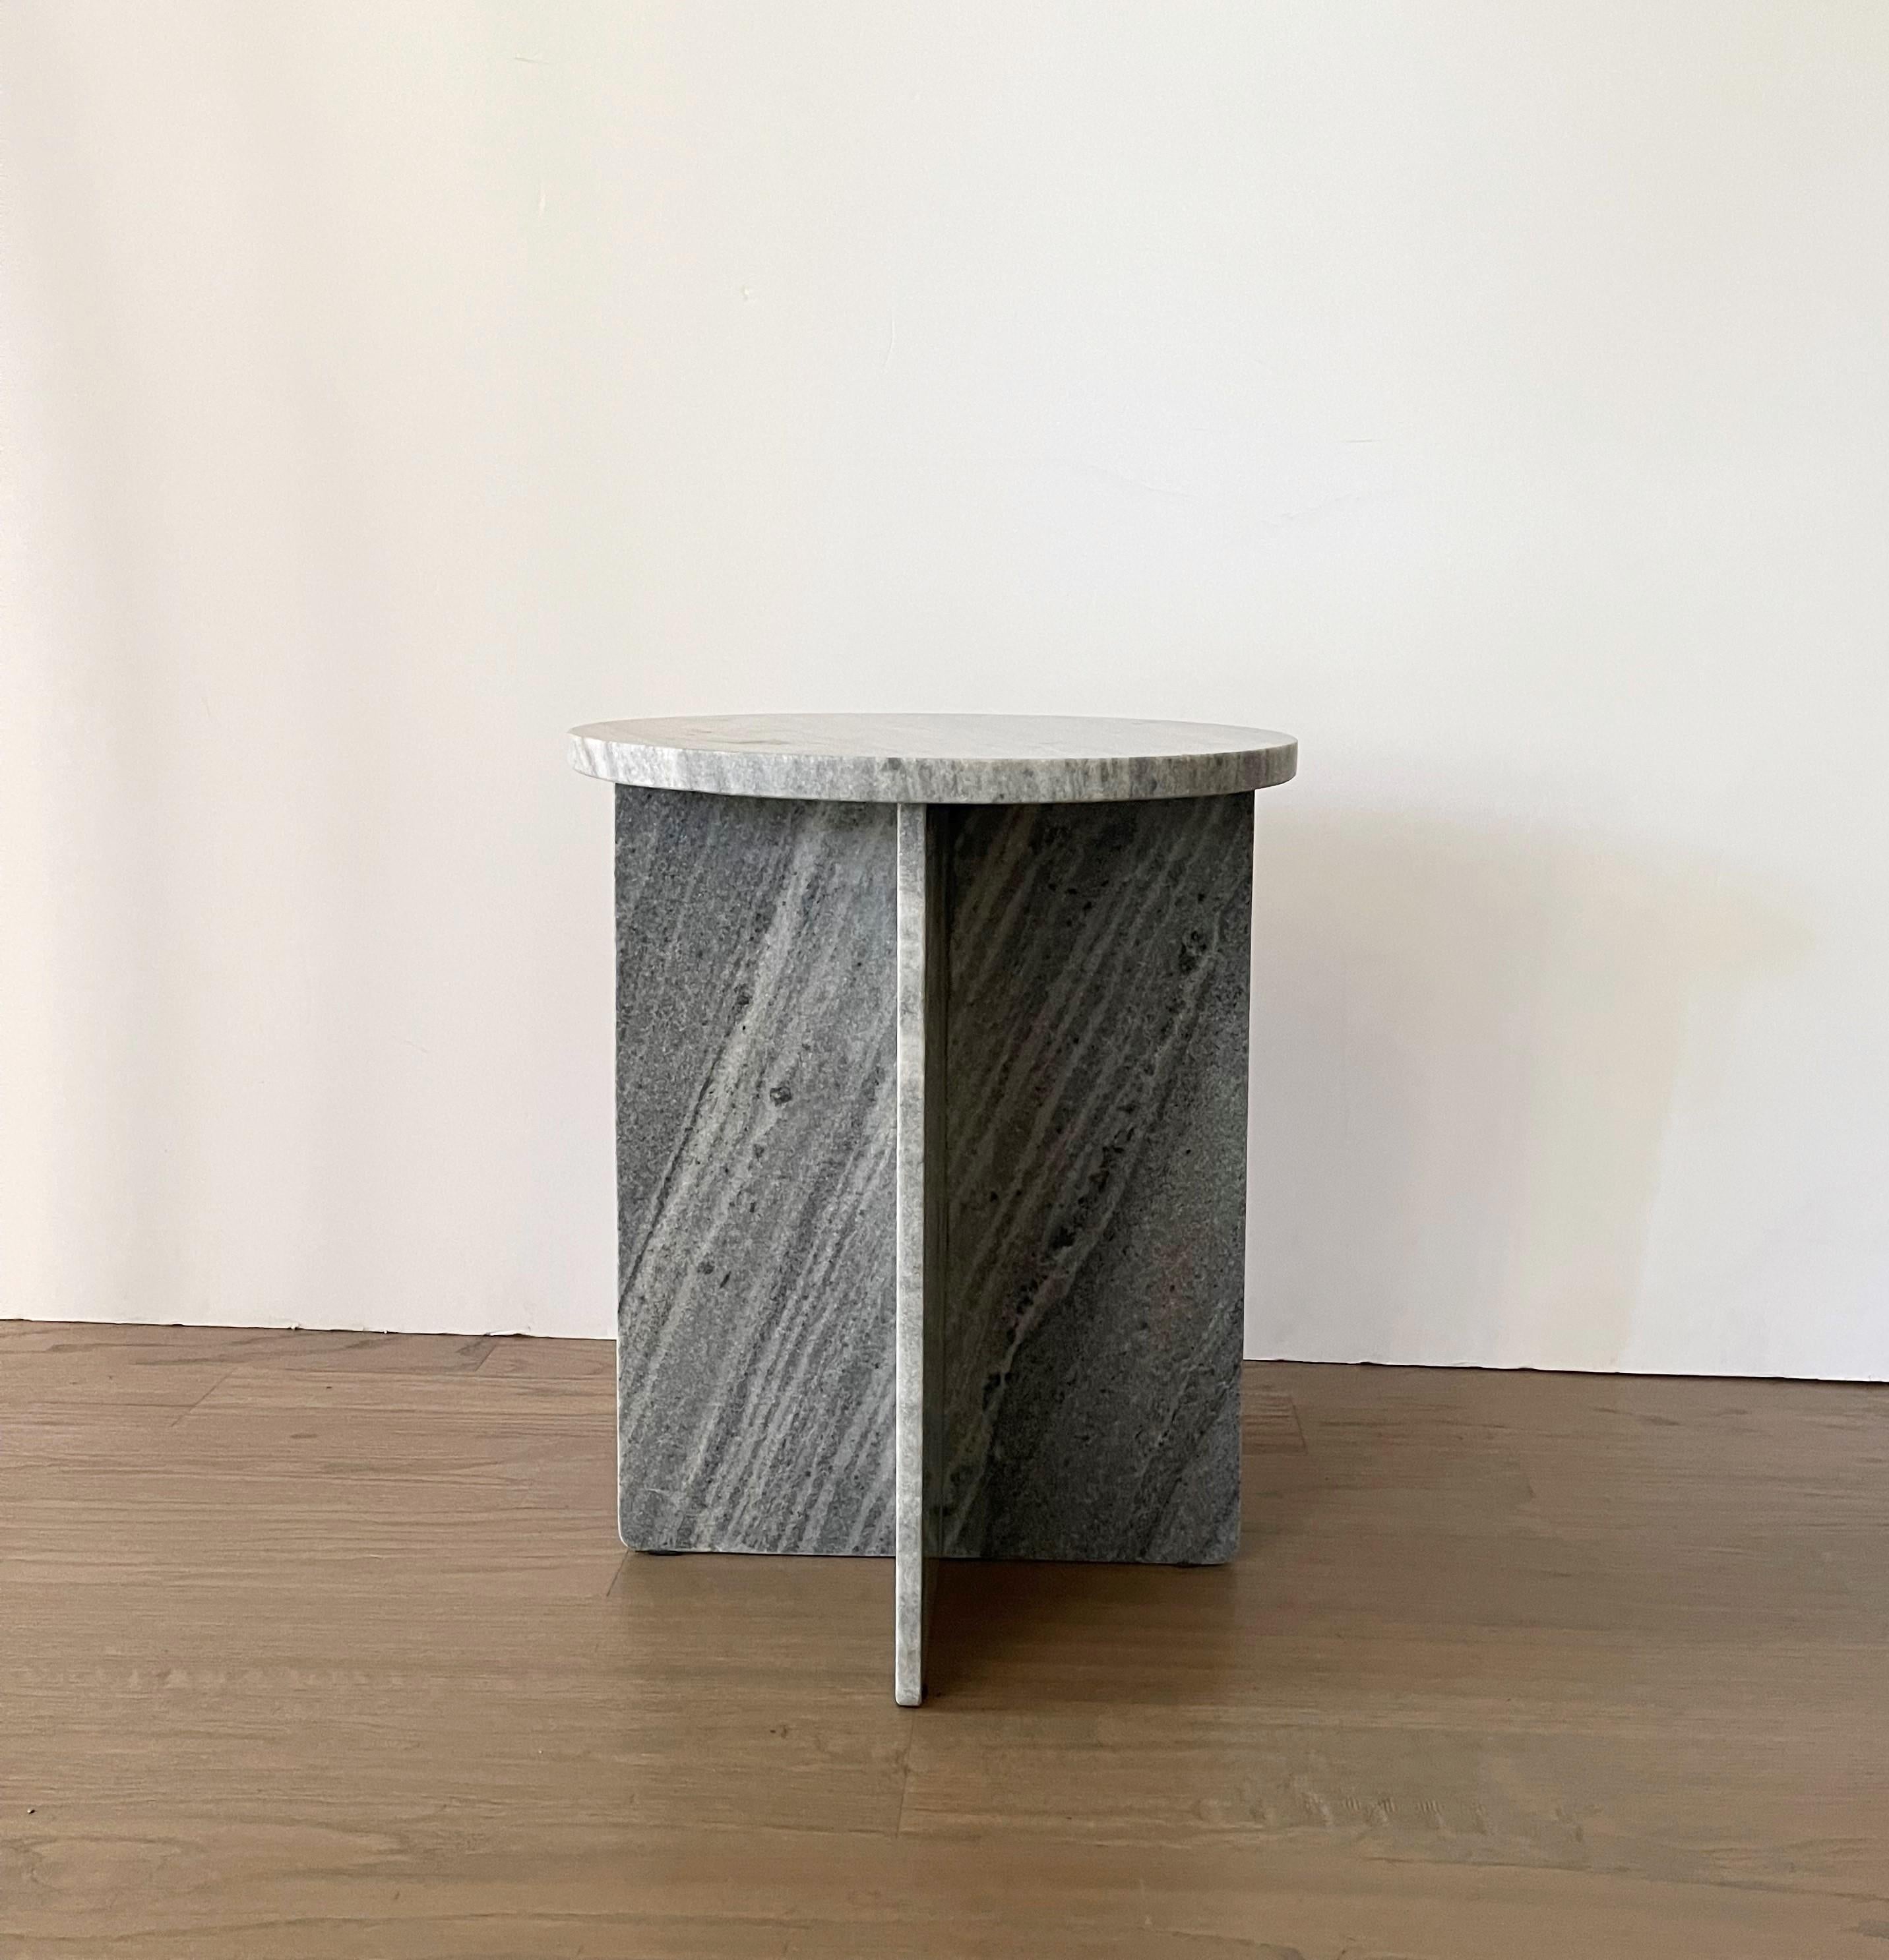 Splendido da ogni angolazione, realizzato in marmo massiccio, questo tavolino presenta una semplice silhouette geometrica e una base composta da pannelli piatti che lo rendono un'opera d'arte minimalista tanto quanto un mobile funzionale. Il piano